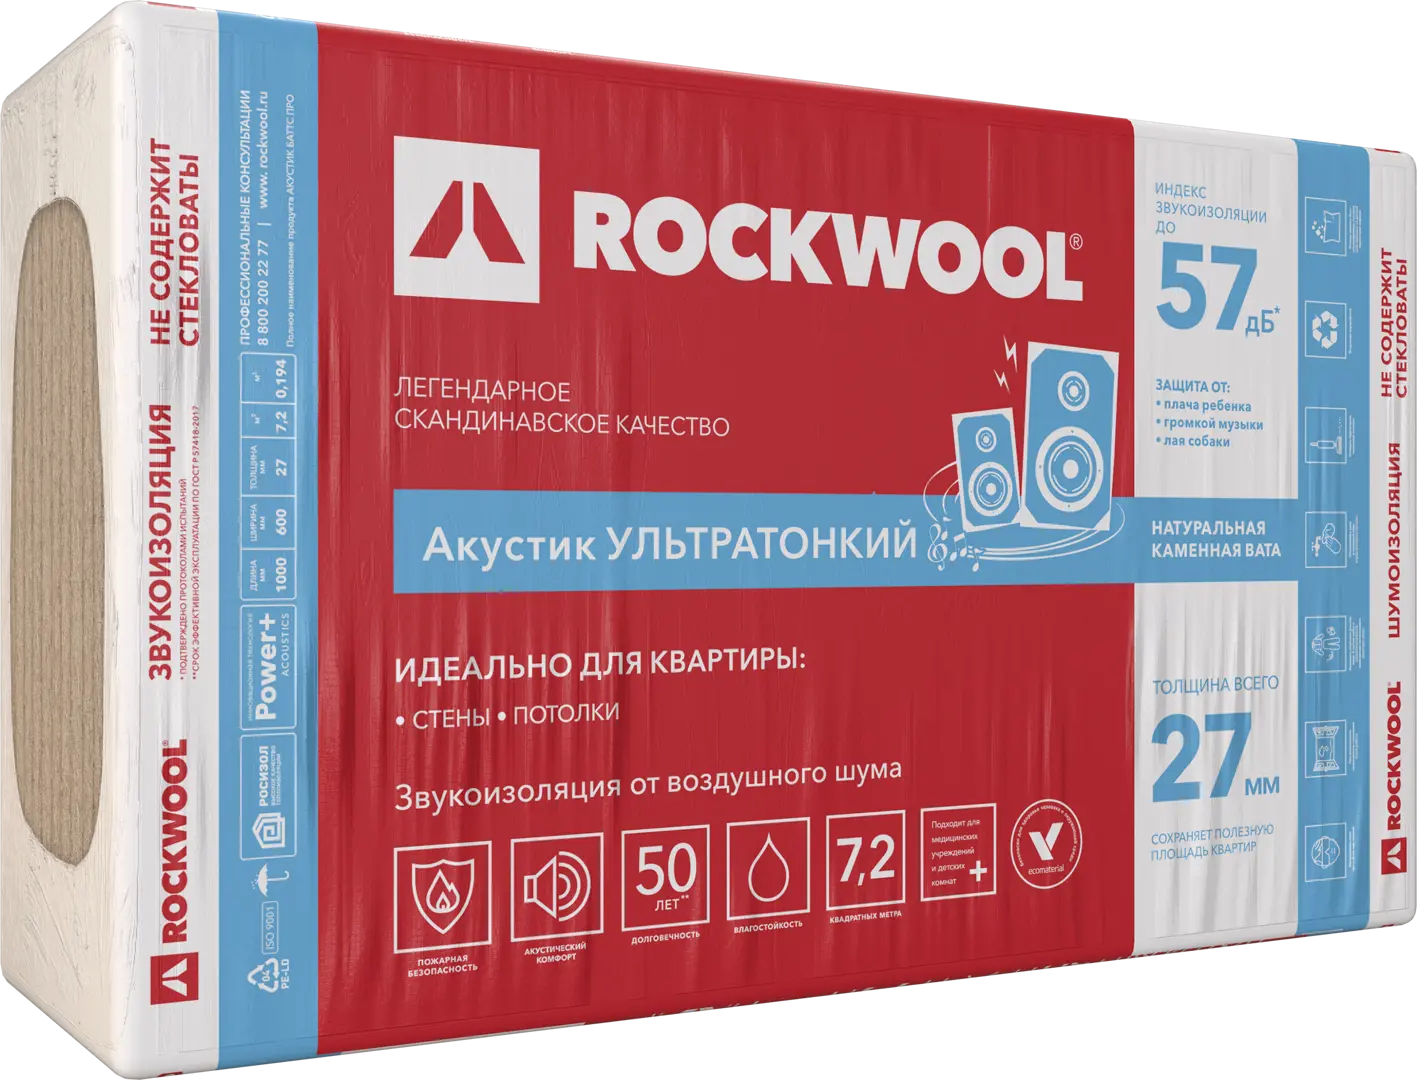 Звукоизоляция Rockwool Акустик ультратонкий 27 мм 7.2 м? звукоизоляция акустикнауф слим плита 27 мм 11 м